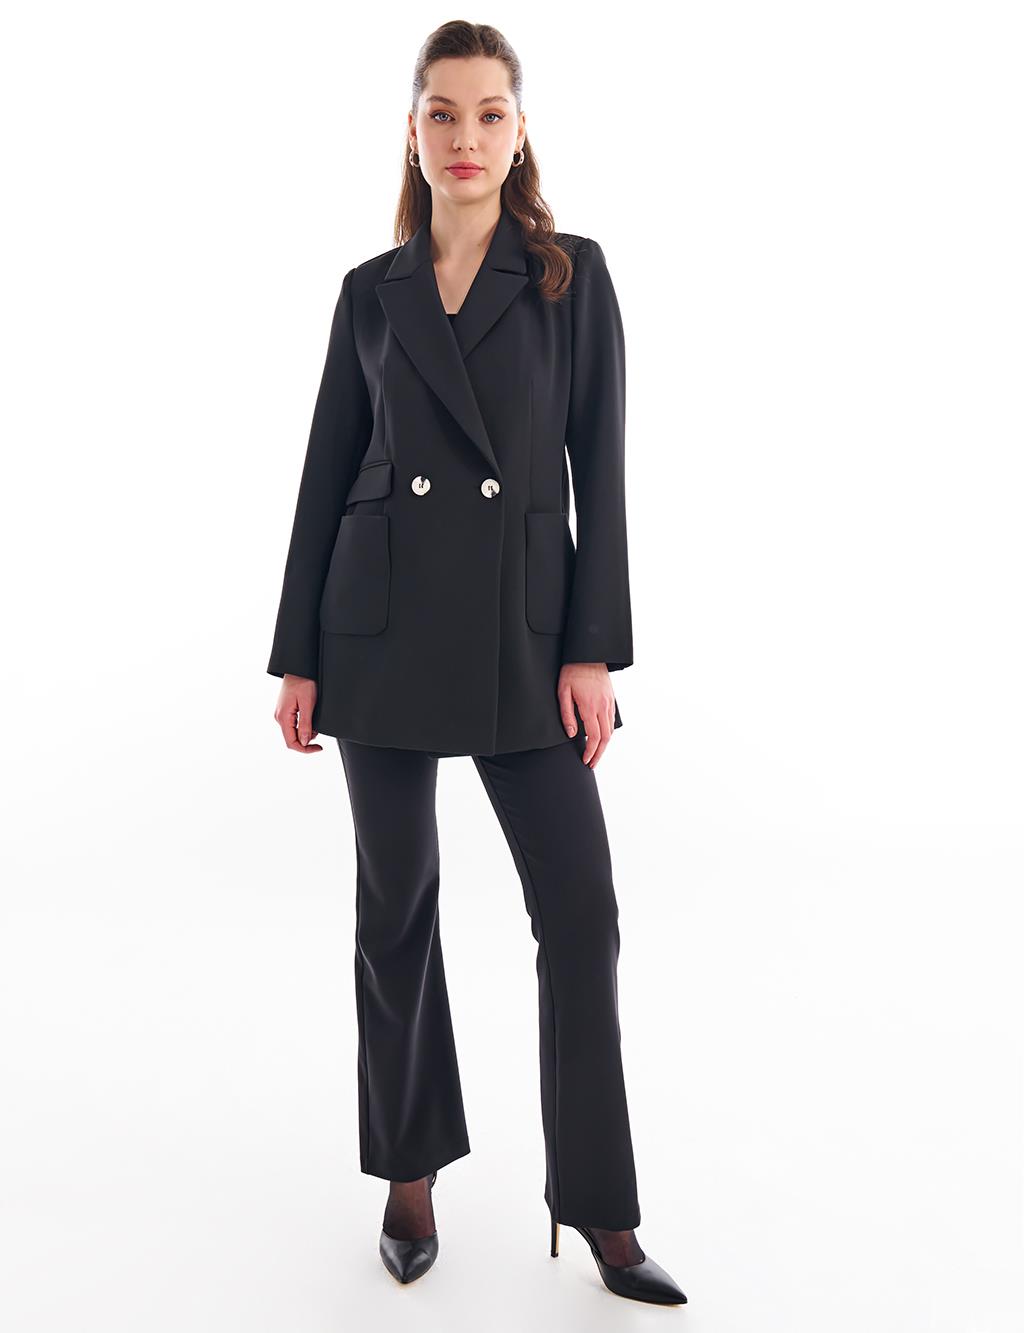 Базовый пиджак-пиджак черный KYR пиджак opinion базовый 44 размер